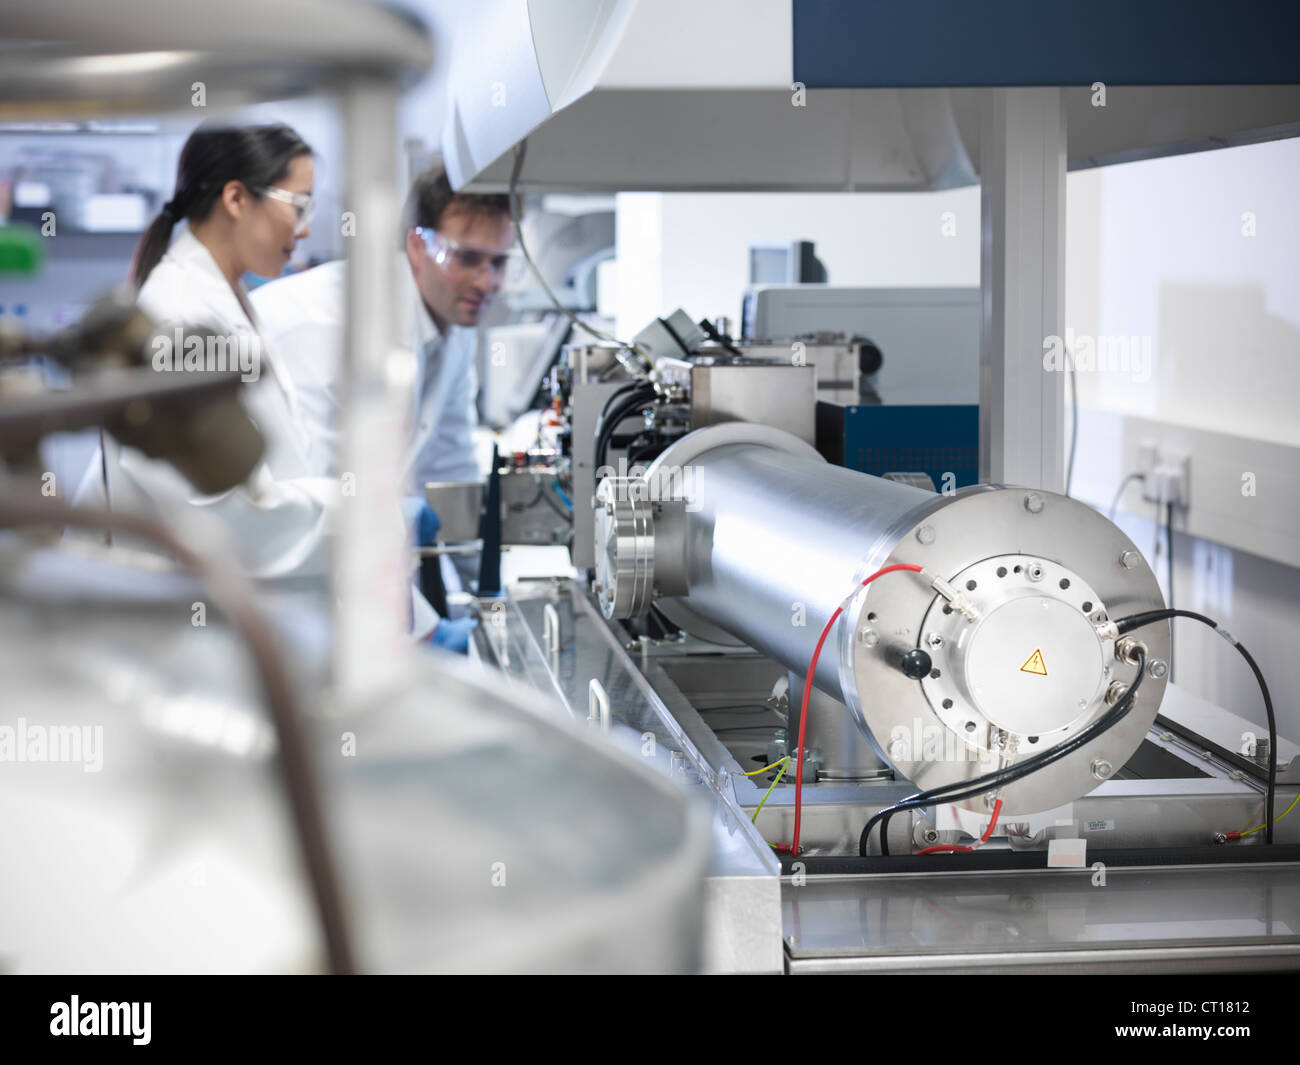 Scientist using equipment in lab Stock Photo